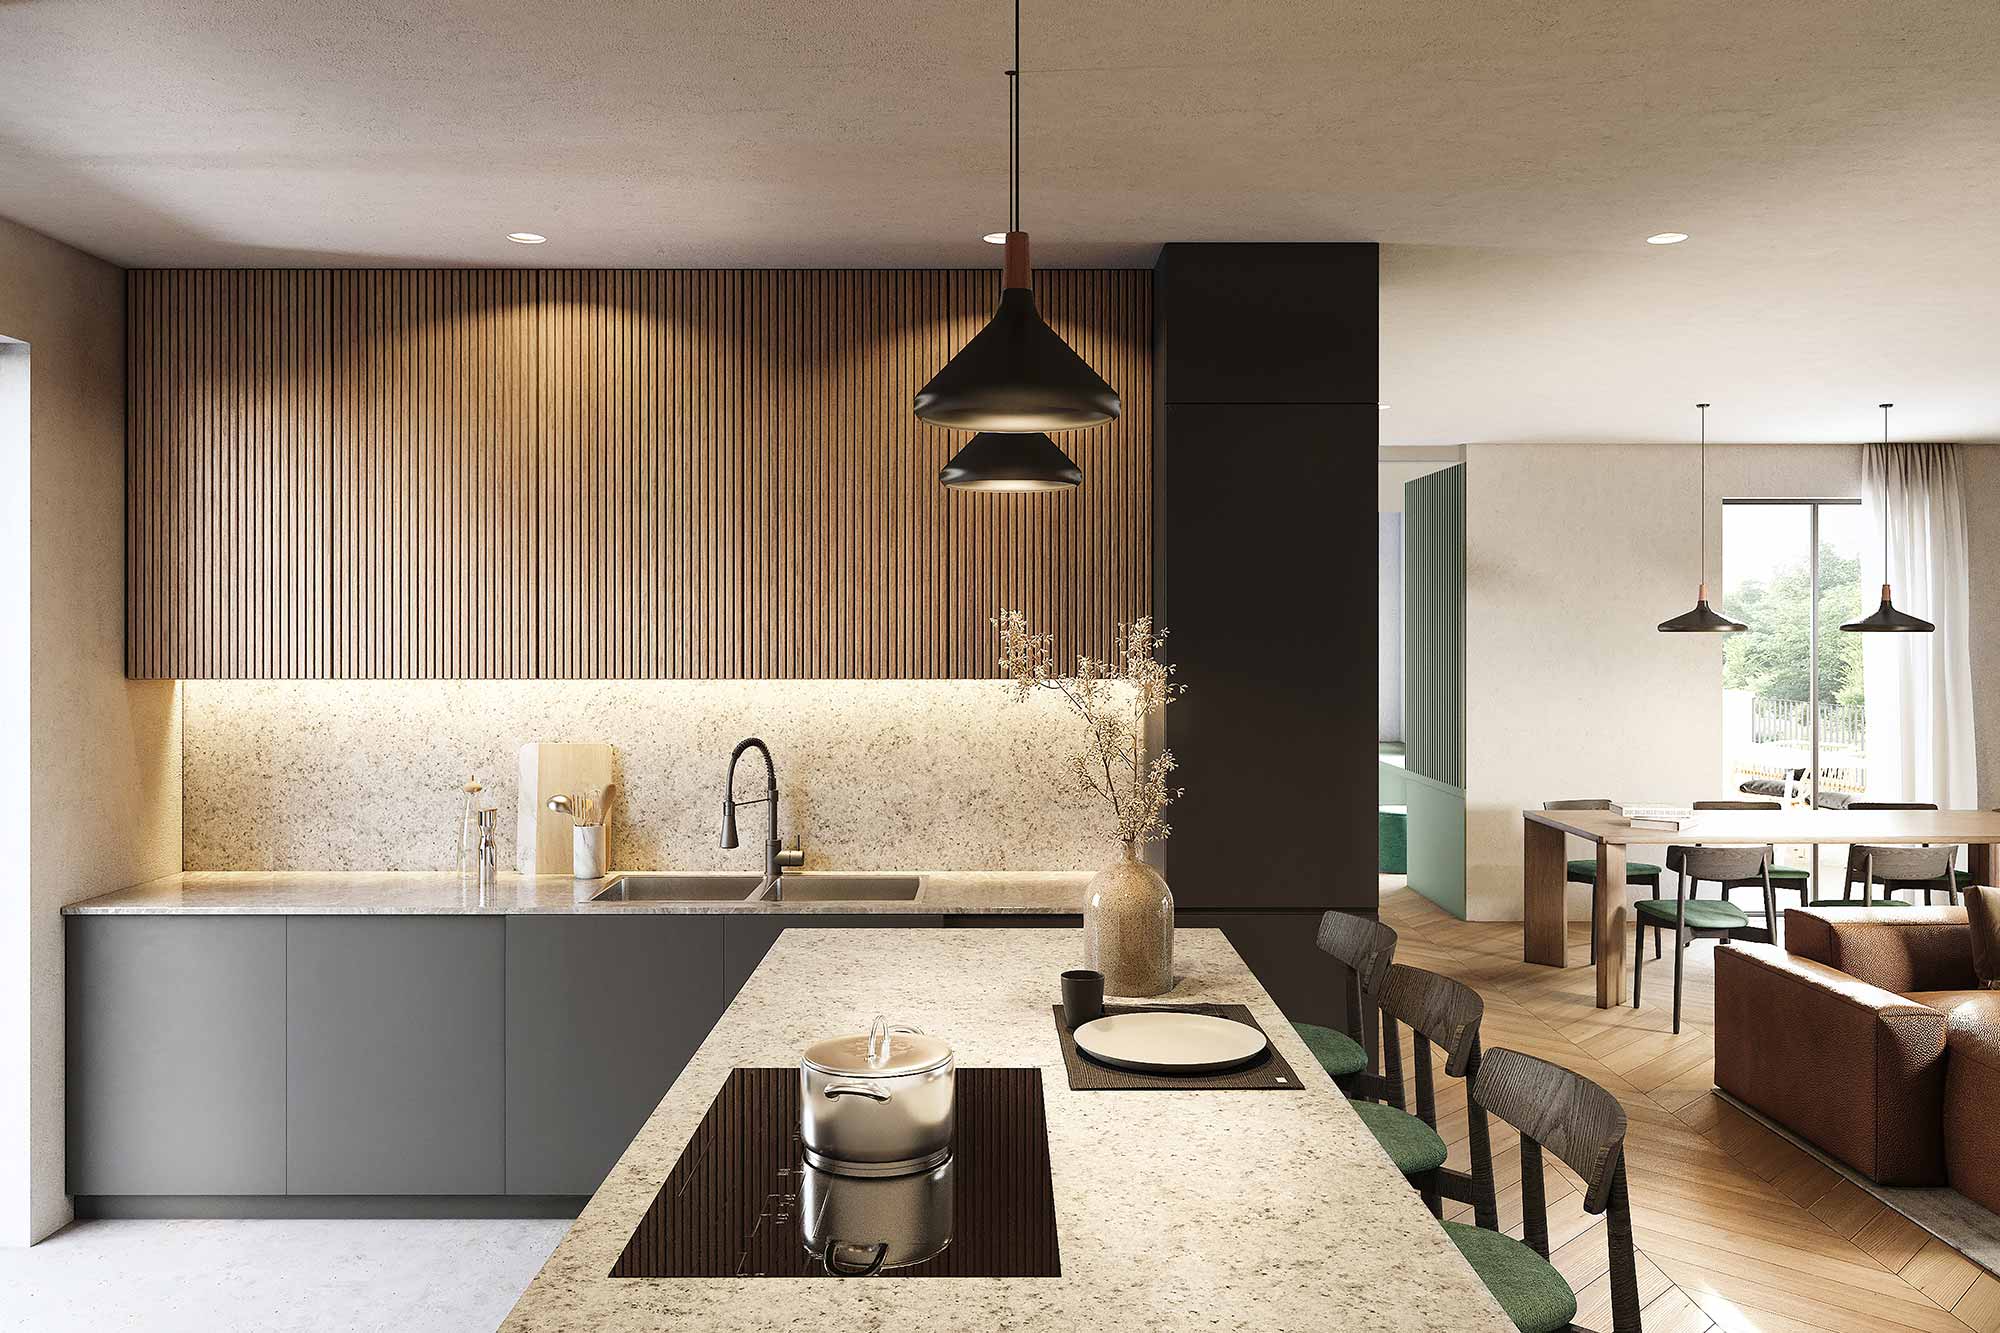 casa migi cucina architetti brescia studio architettura interior design brescia banp studio